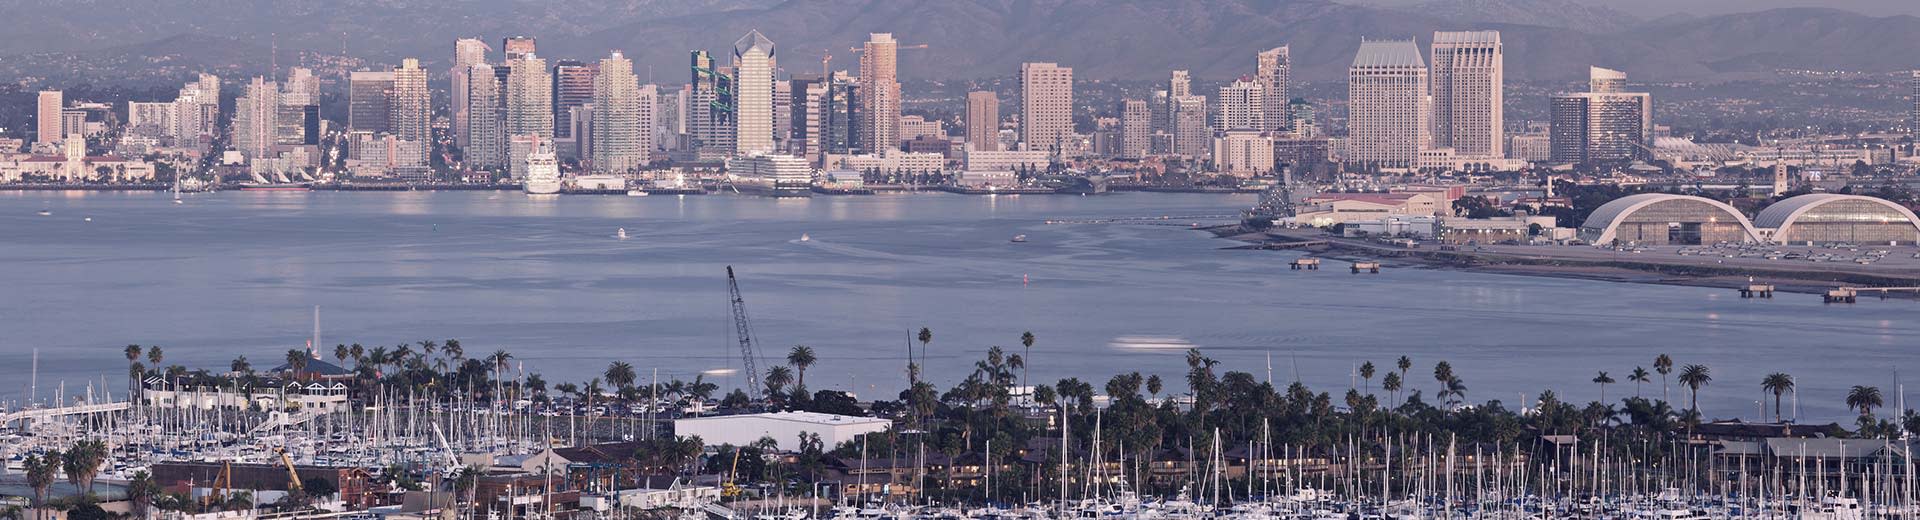 Les palmiers dominent le premier plan, tandis que à travers un plan d'eau se trouvent les grands bâtiments blancs de San Diego dans la chaleur.